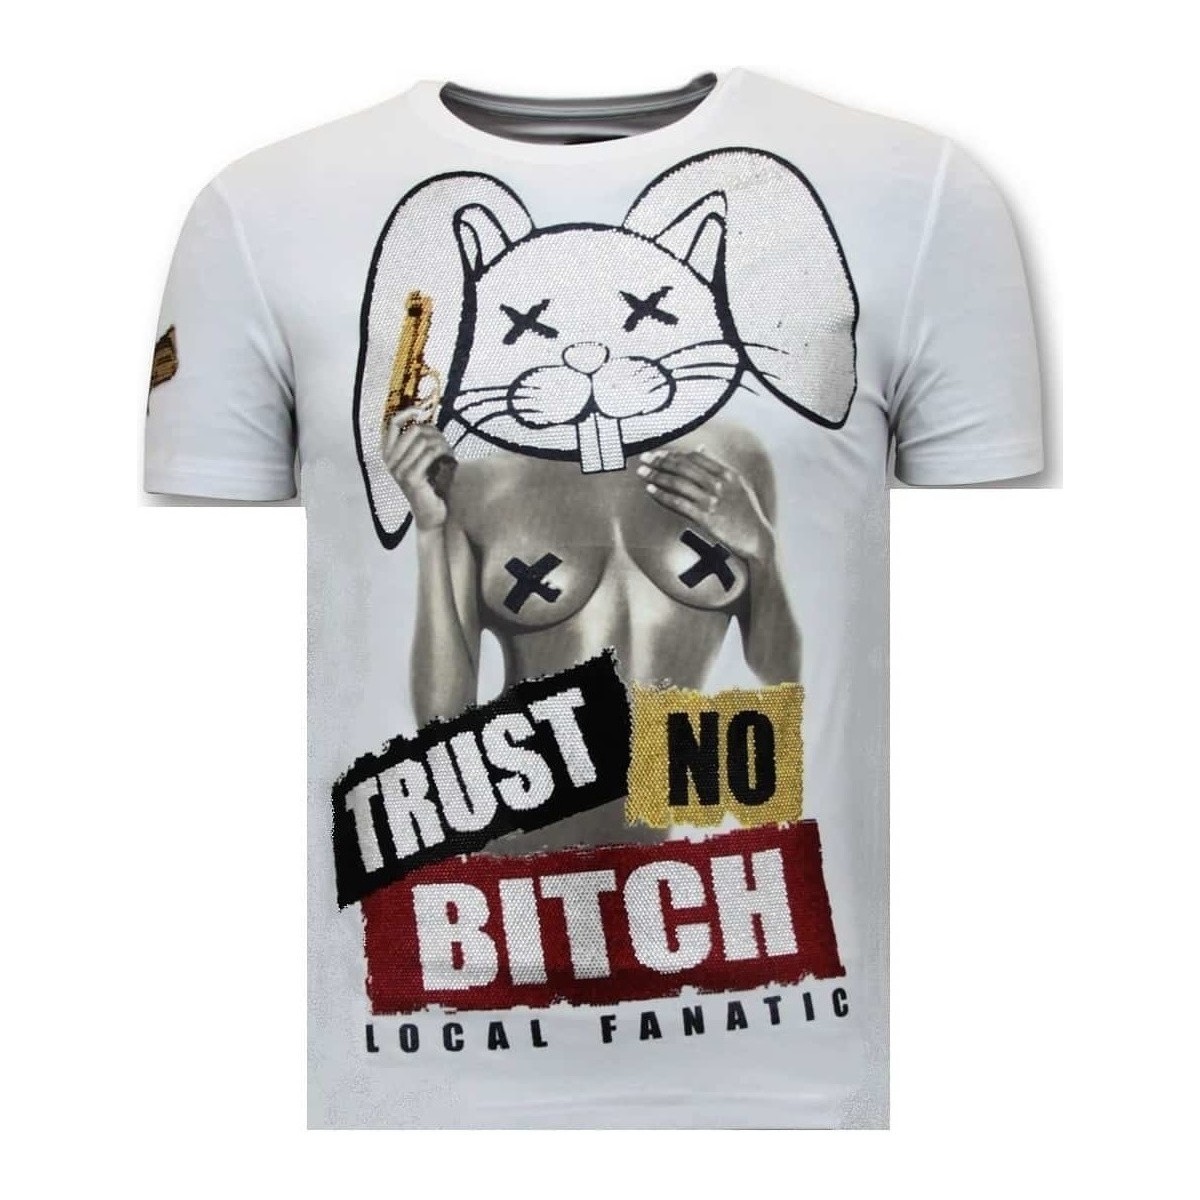 Kleidung Herren T-Shirts Local Fanatic Mit Aufdruck Trust No Bitch Weiss